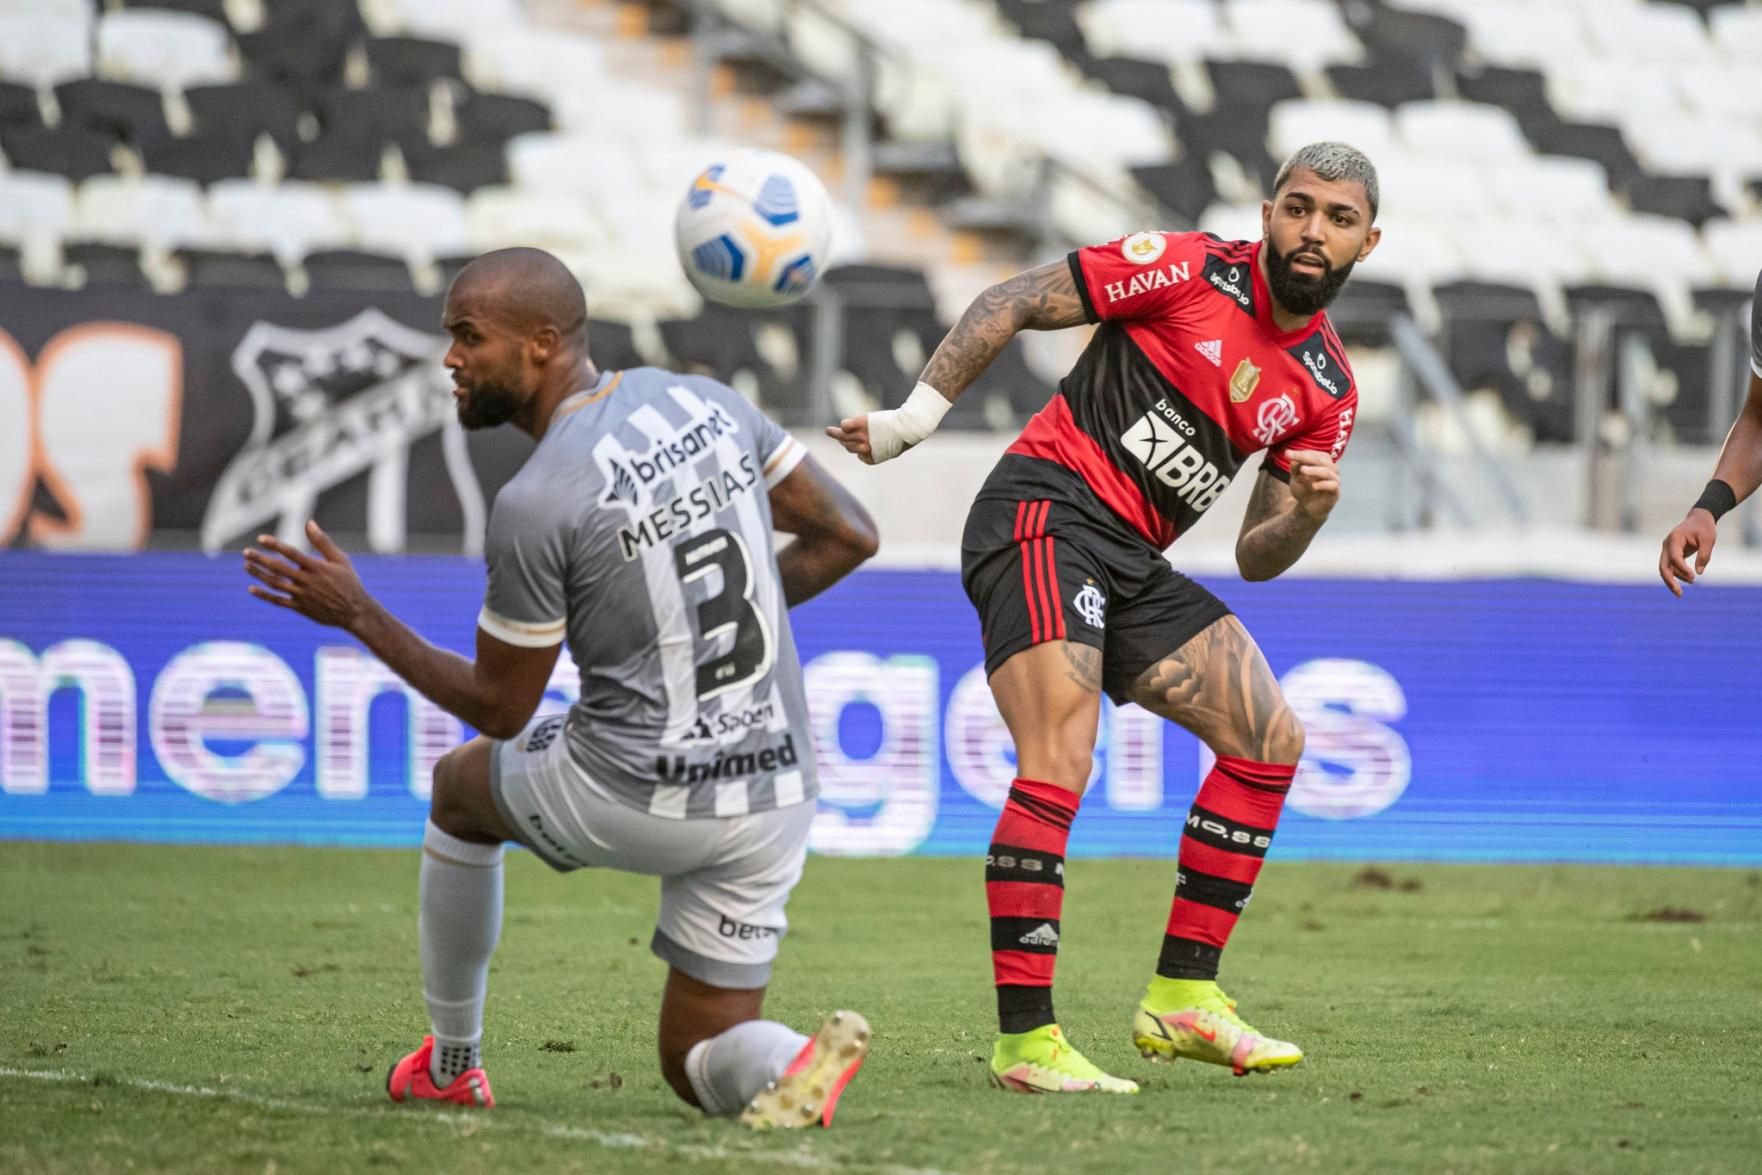 Análise: Flamengo roda elenco, bate ponto contra o Grêmio e ganha